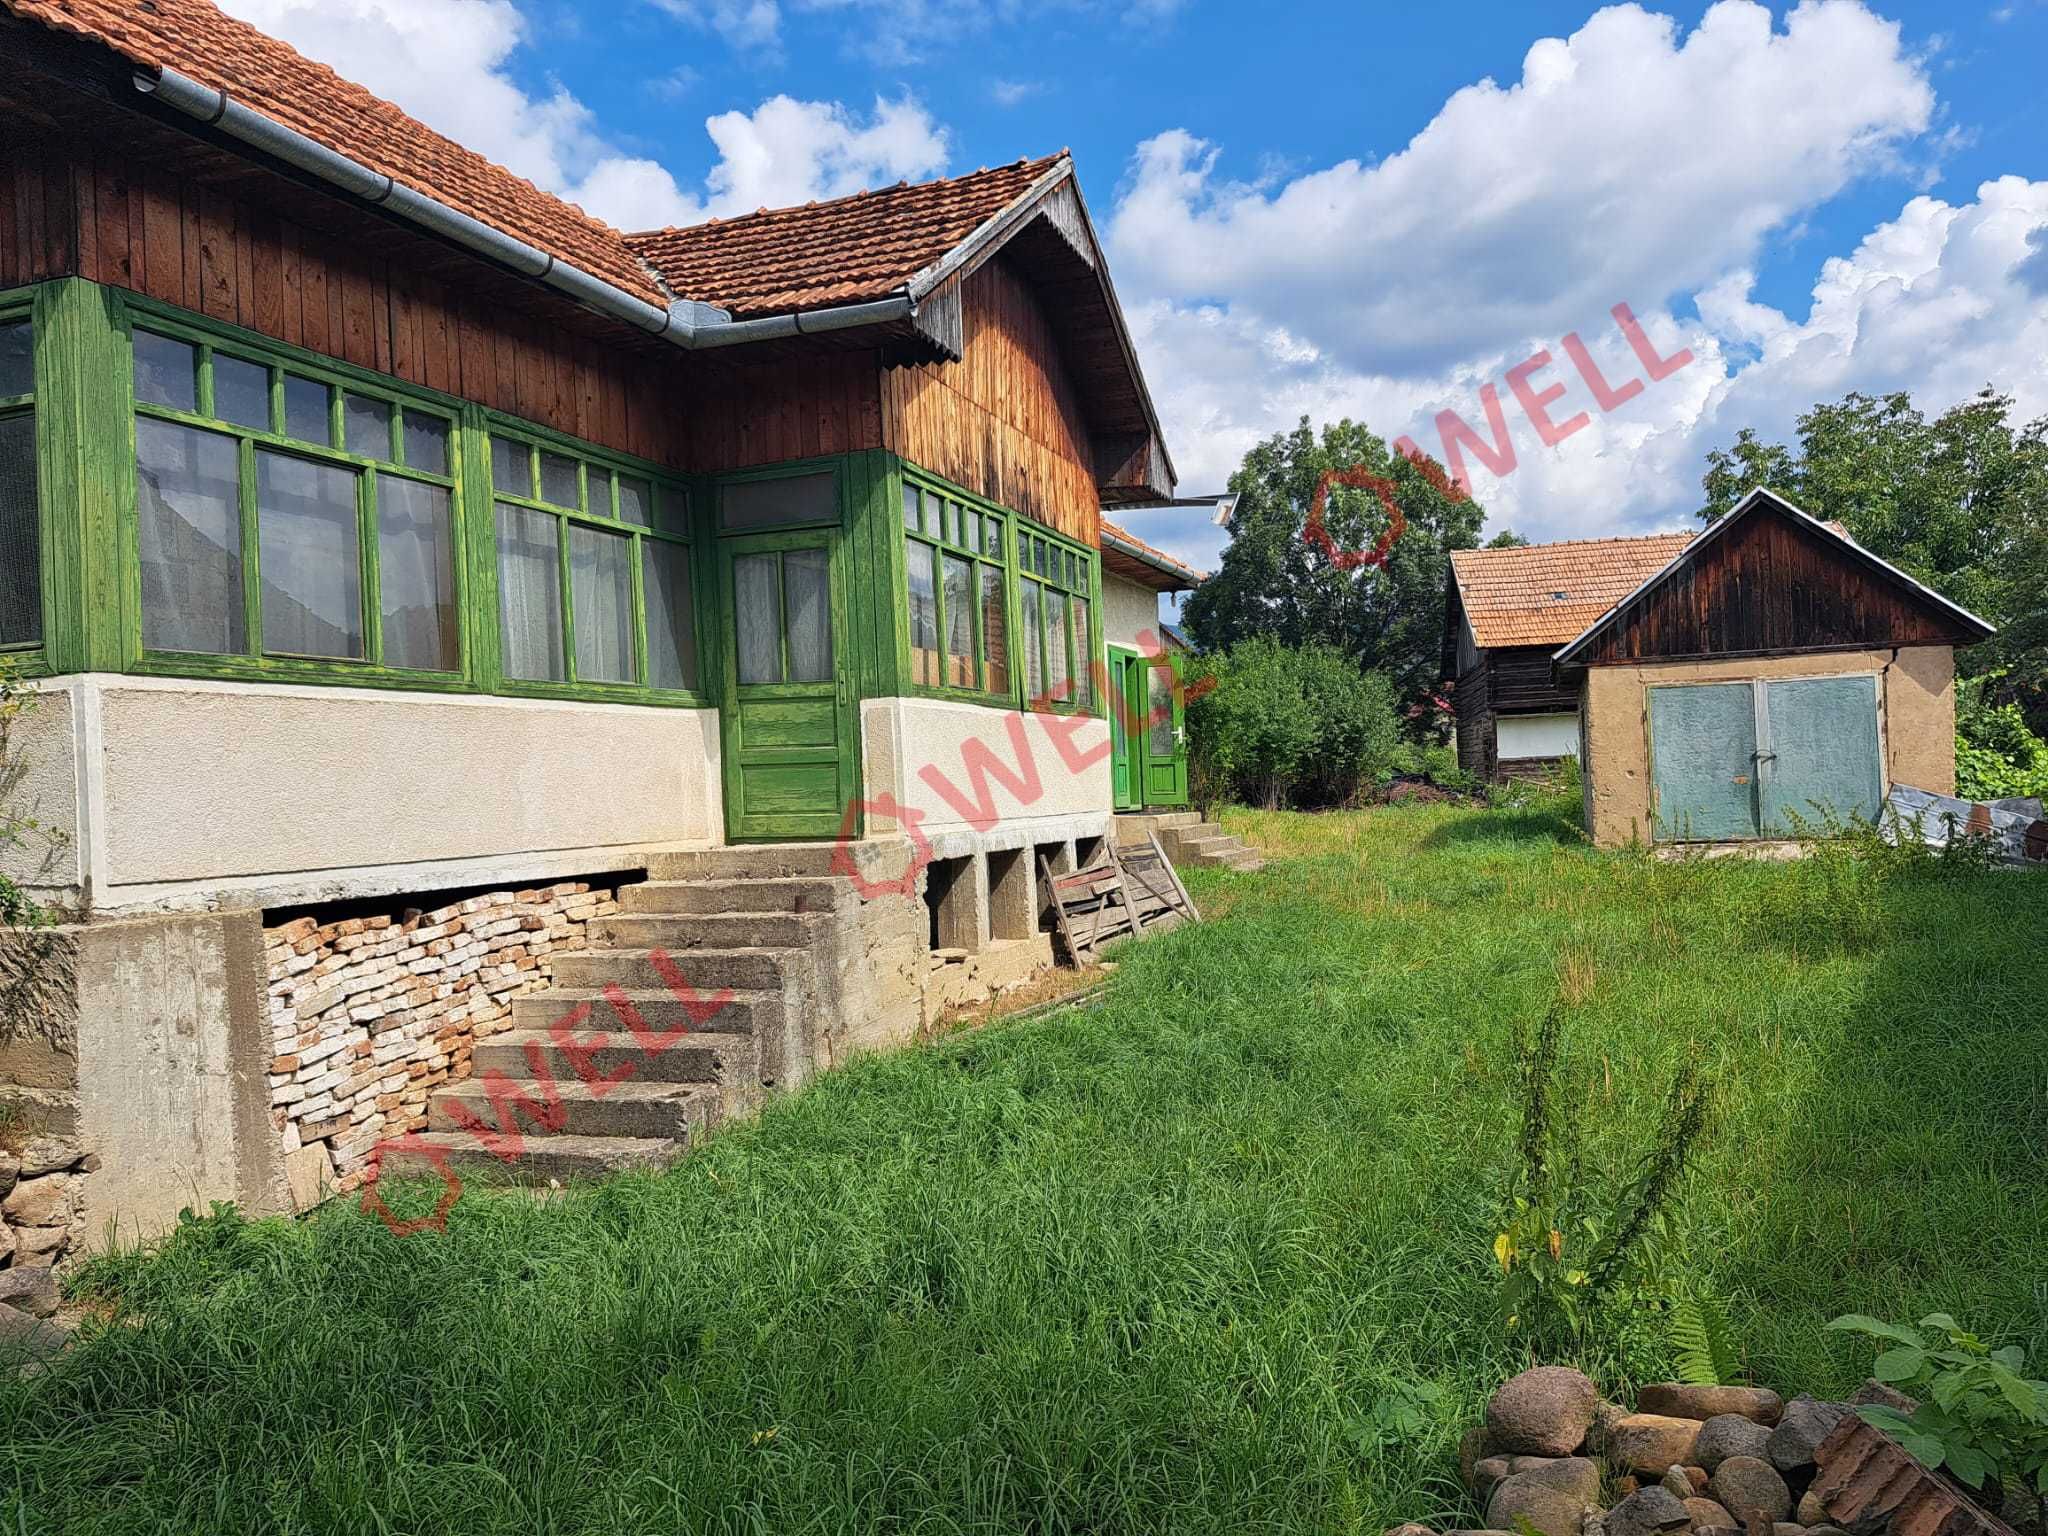 De vânzare o casă familială în Voineșt, orașul Covasna